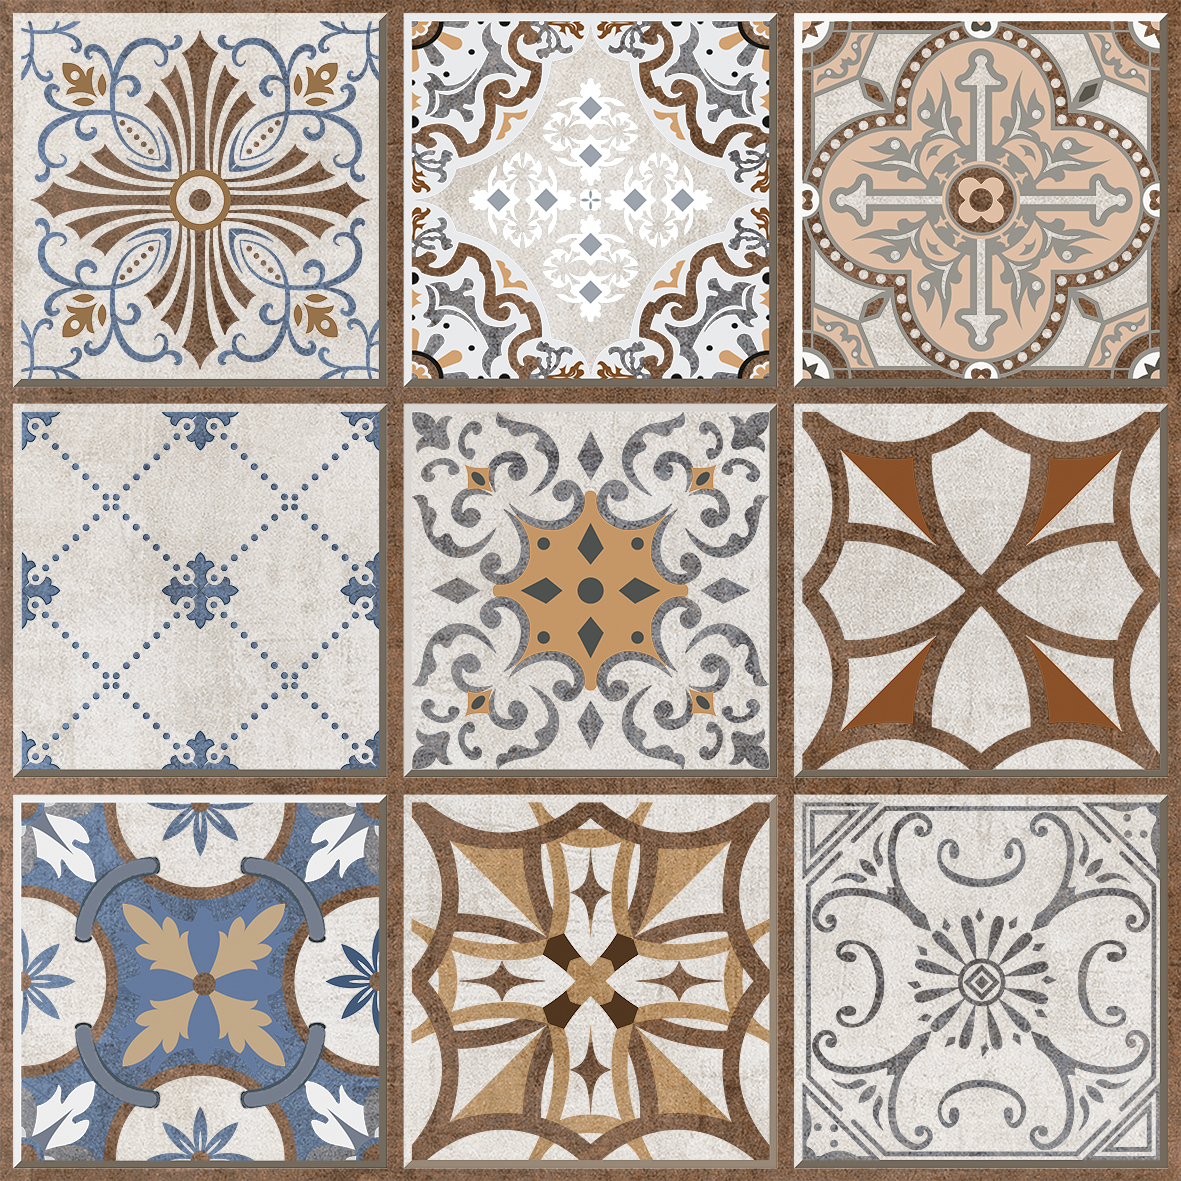 Moroccan Floor Tiles 500x500 MM